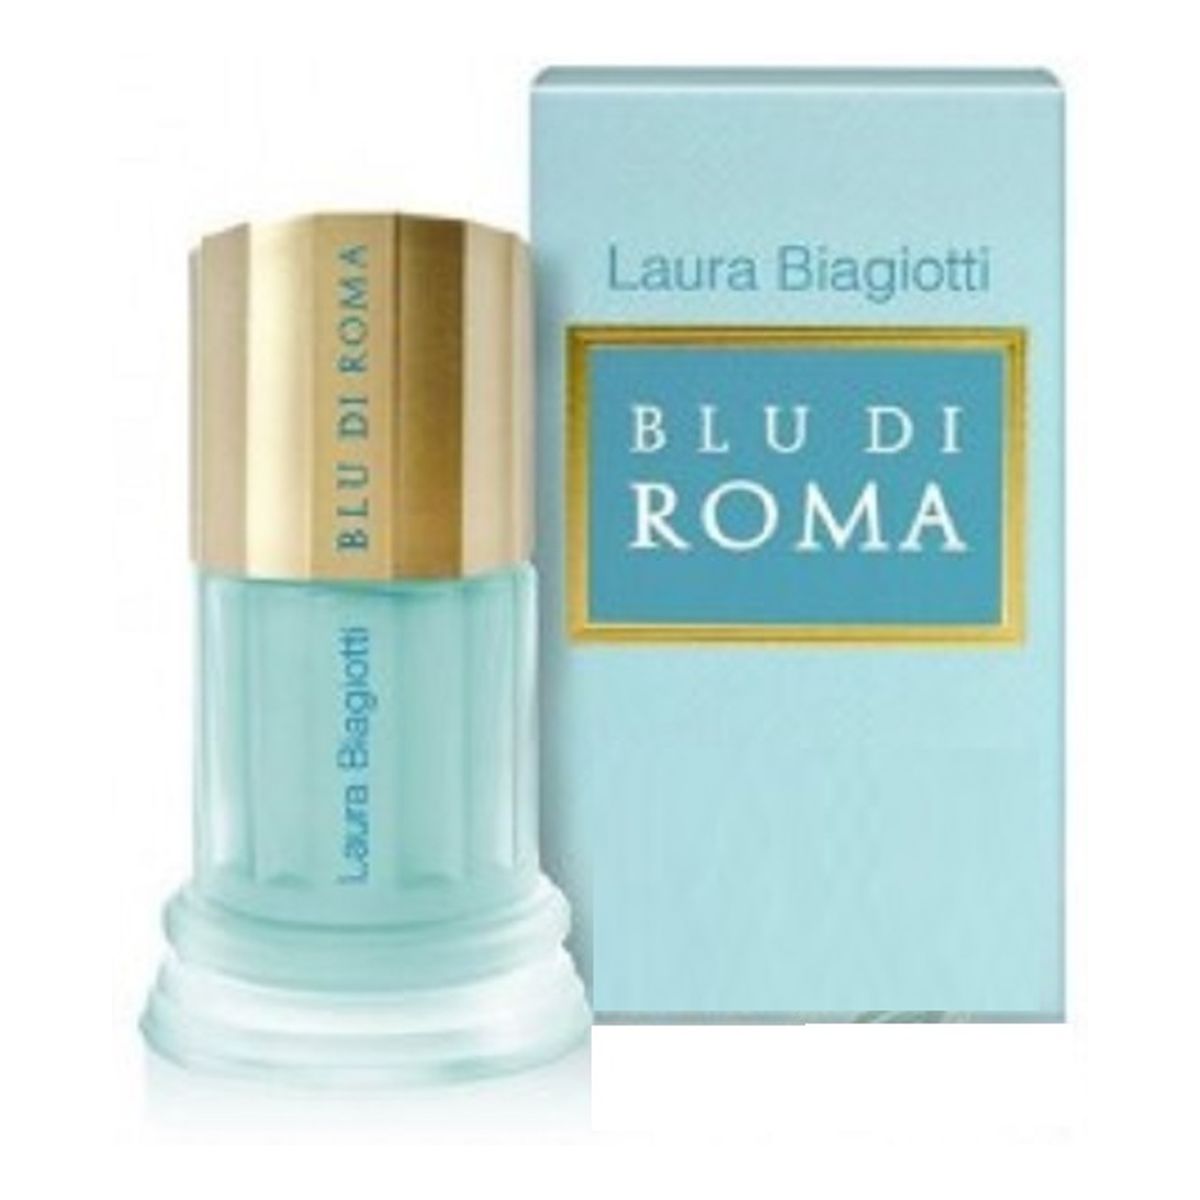 Laura Biagiotti Blu Di Roma Woda toaletowa spray 25ml